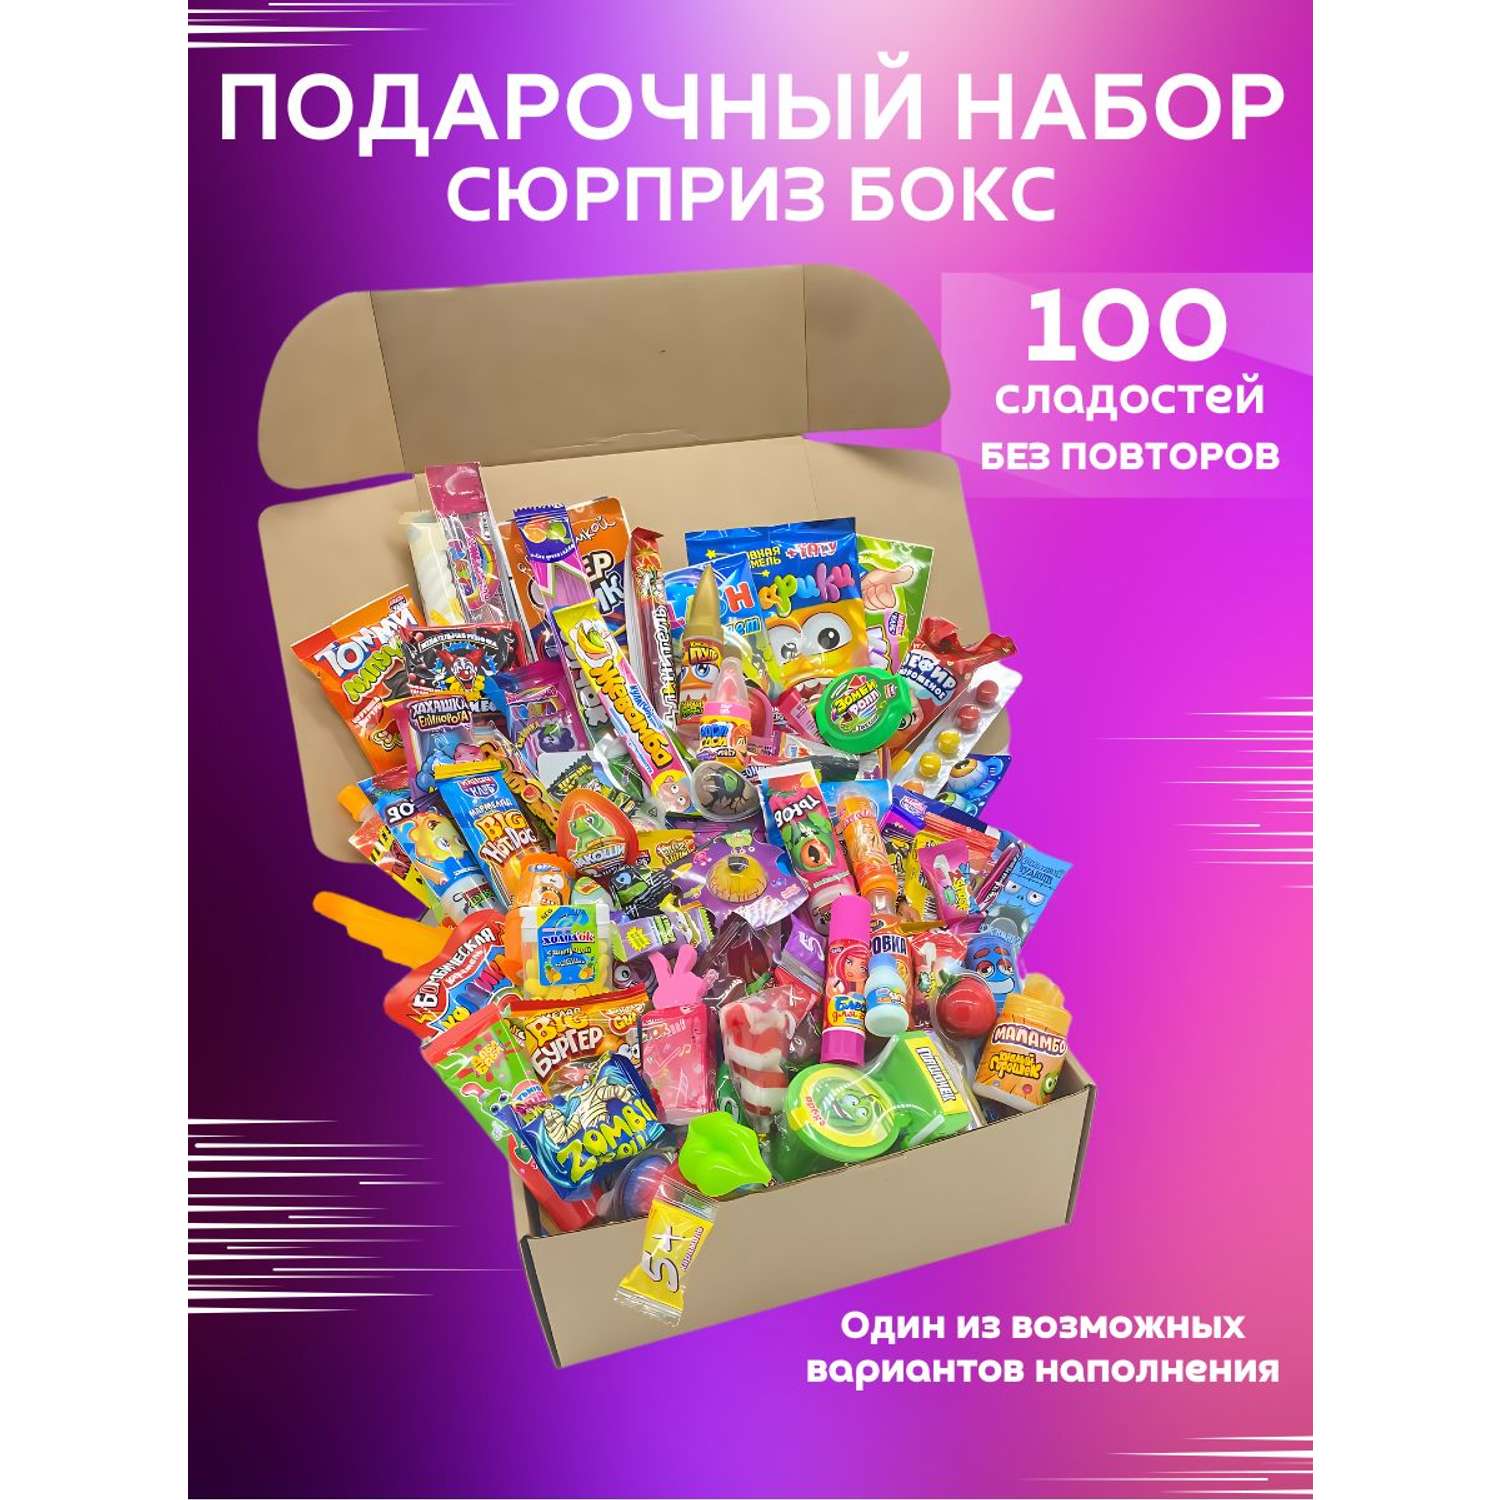 Сладкий подарочный бокс VKUSNODAY 100 конфет - фото 1